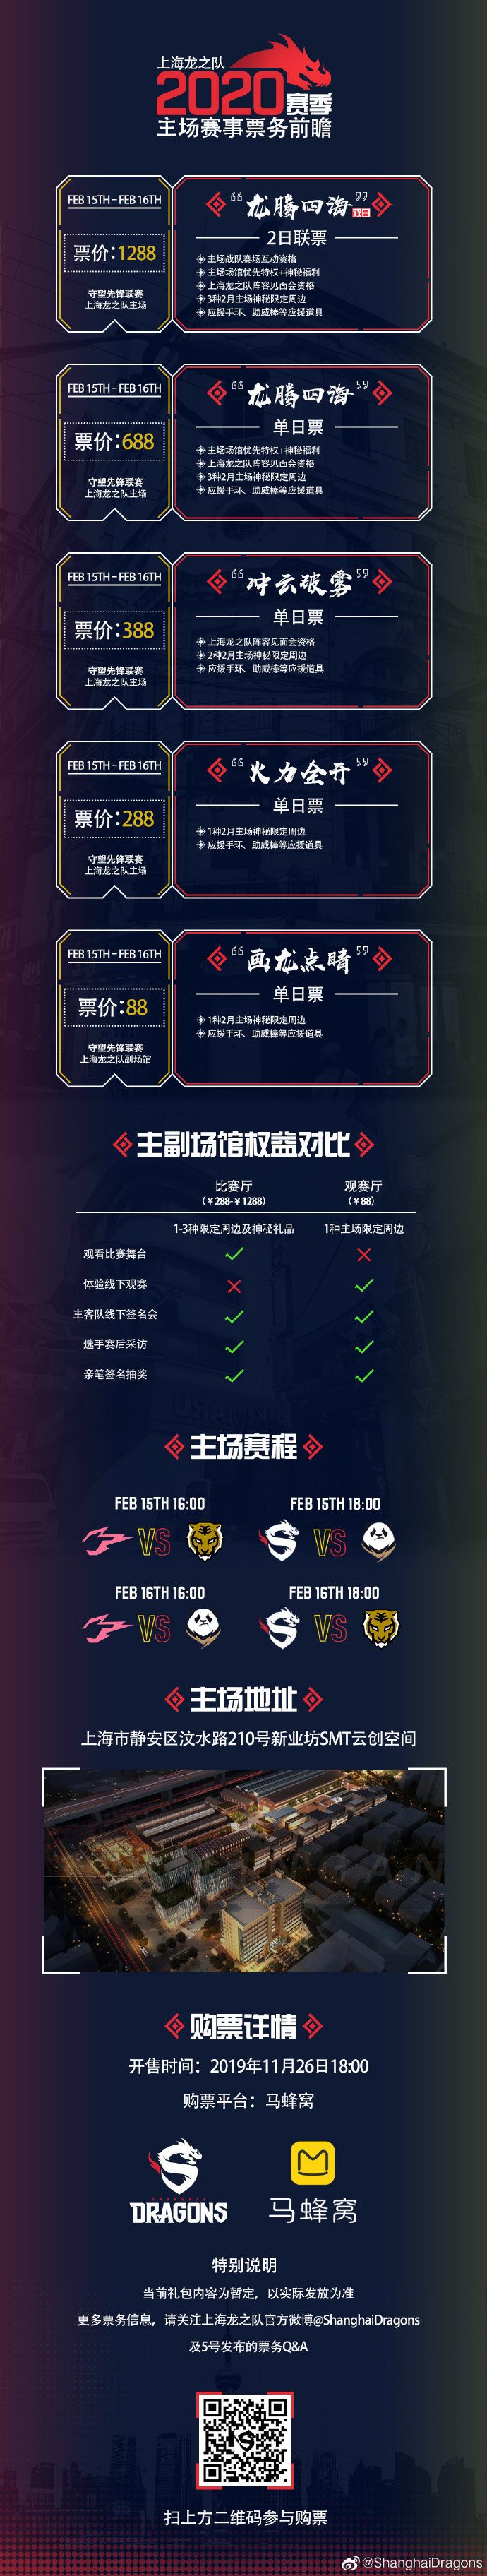 2020守望先锋联赛上海龙之队主场门票第二轮补售正式开启